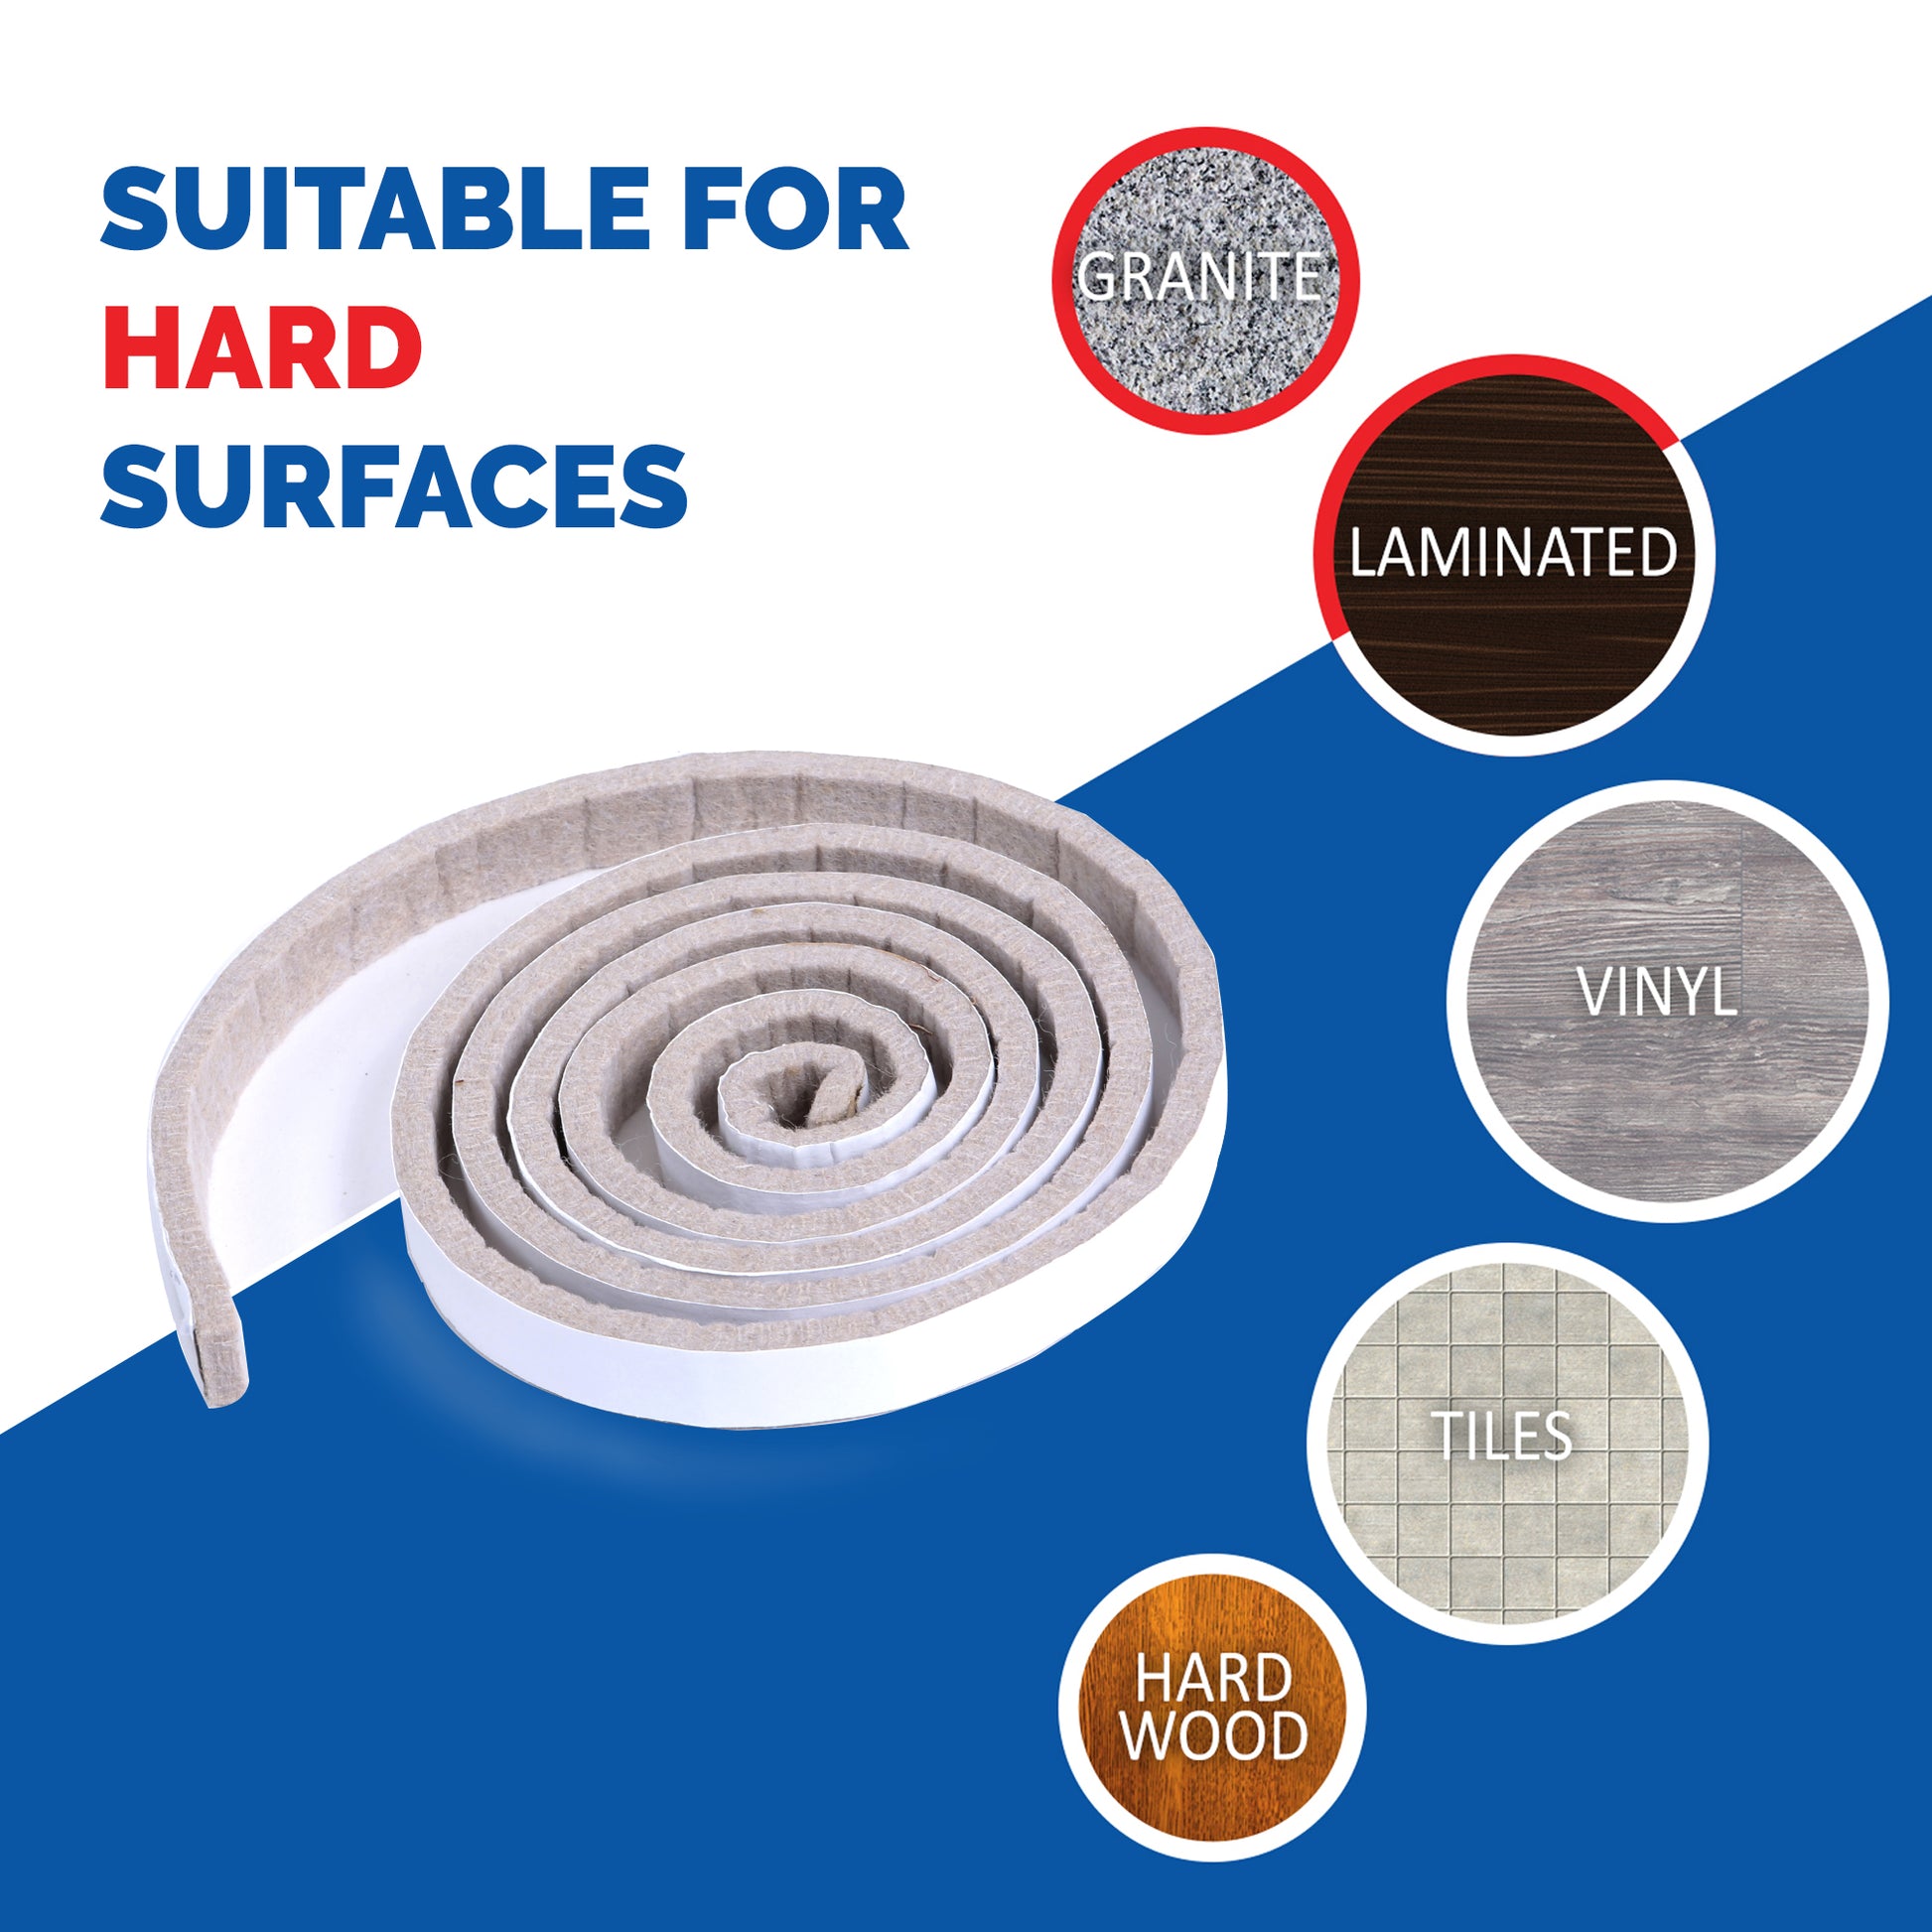 Beige self adhesive felt roll sutiable for hard surface flooring like hardwood, tile, vinyl and laminate